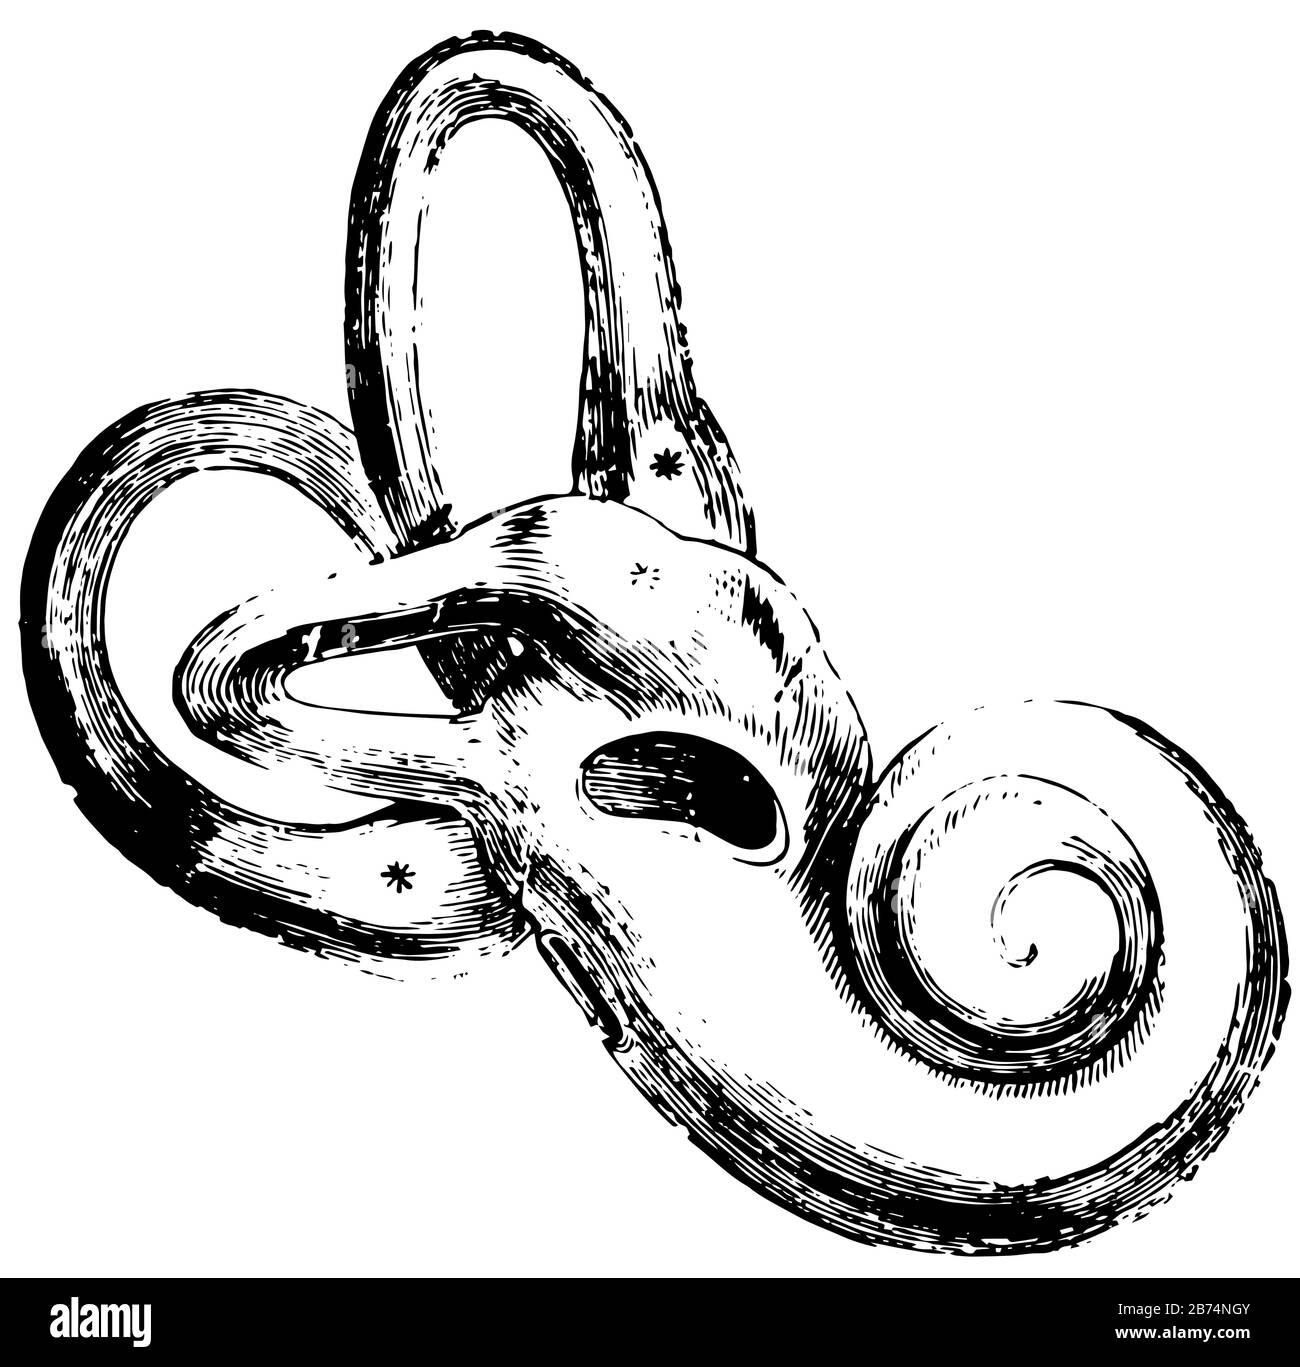 Questa illustrazione rappresenta l'orecchio umano Esterno, il disegno a linee vintage o l'illustrazione dell'incisione. Illustrazione Vettoriale